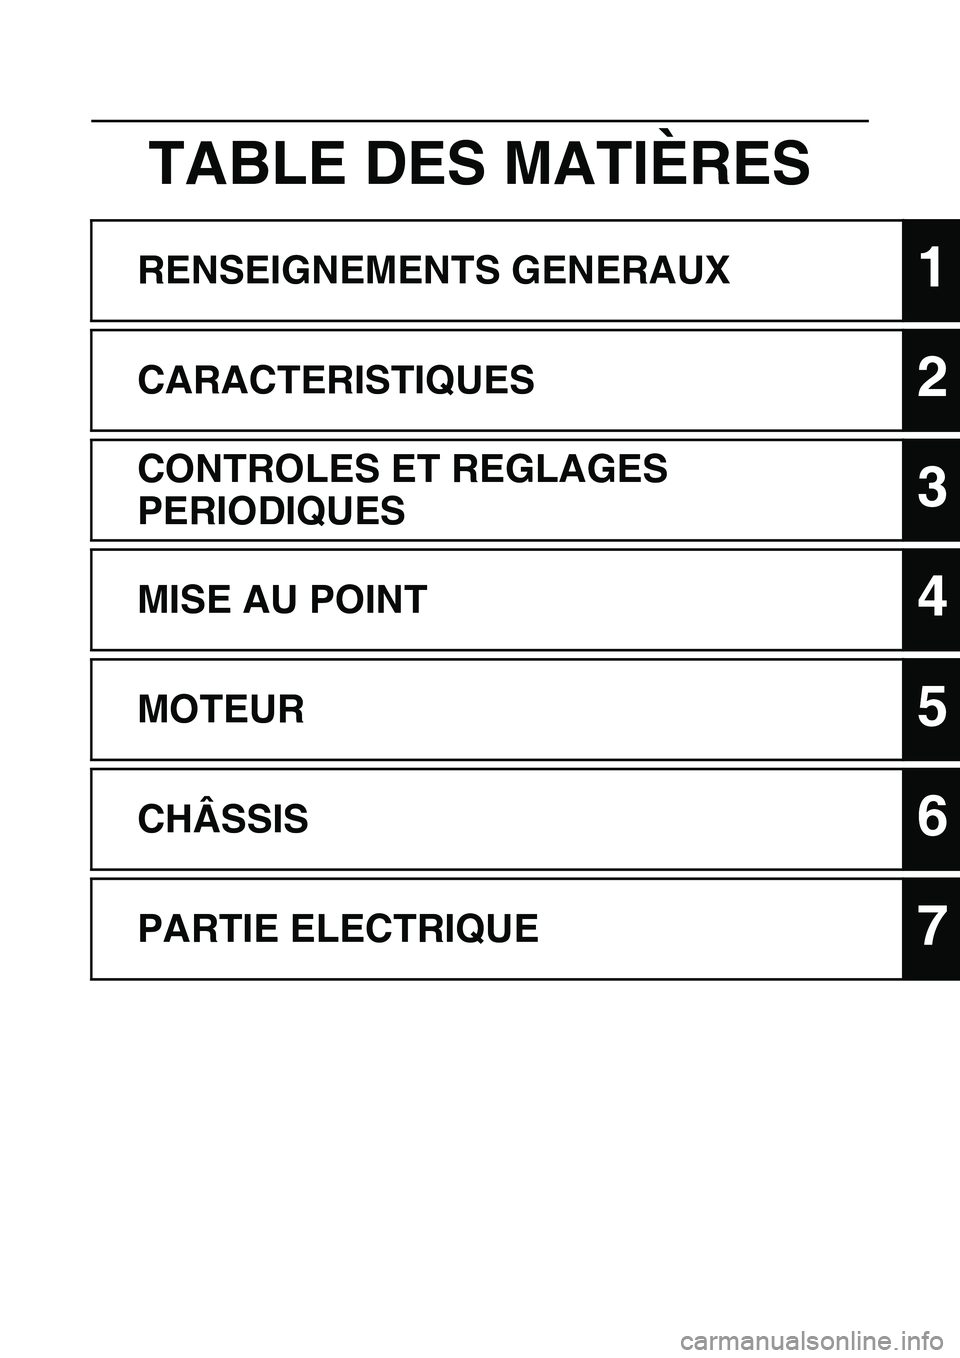 YAMAHA WR 450F 2010  Notices Demploi (in French) 
TABLE DES MATIÈRES
RENSEIGNEMENTS GENERAUX1
CARACTERISTIQUES2
CONTROLES ET REGLAGES 
PERIODIQUES
3
MISE AU POINT4
MOTEUR5
CHÂSSIS6
PARTIE ELECTRIQUE7 